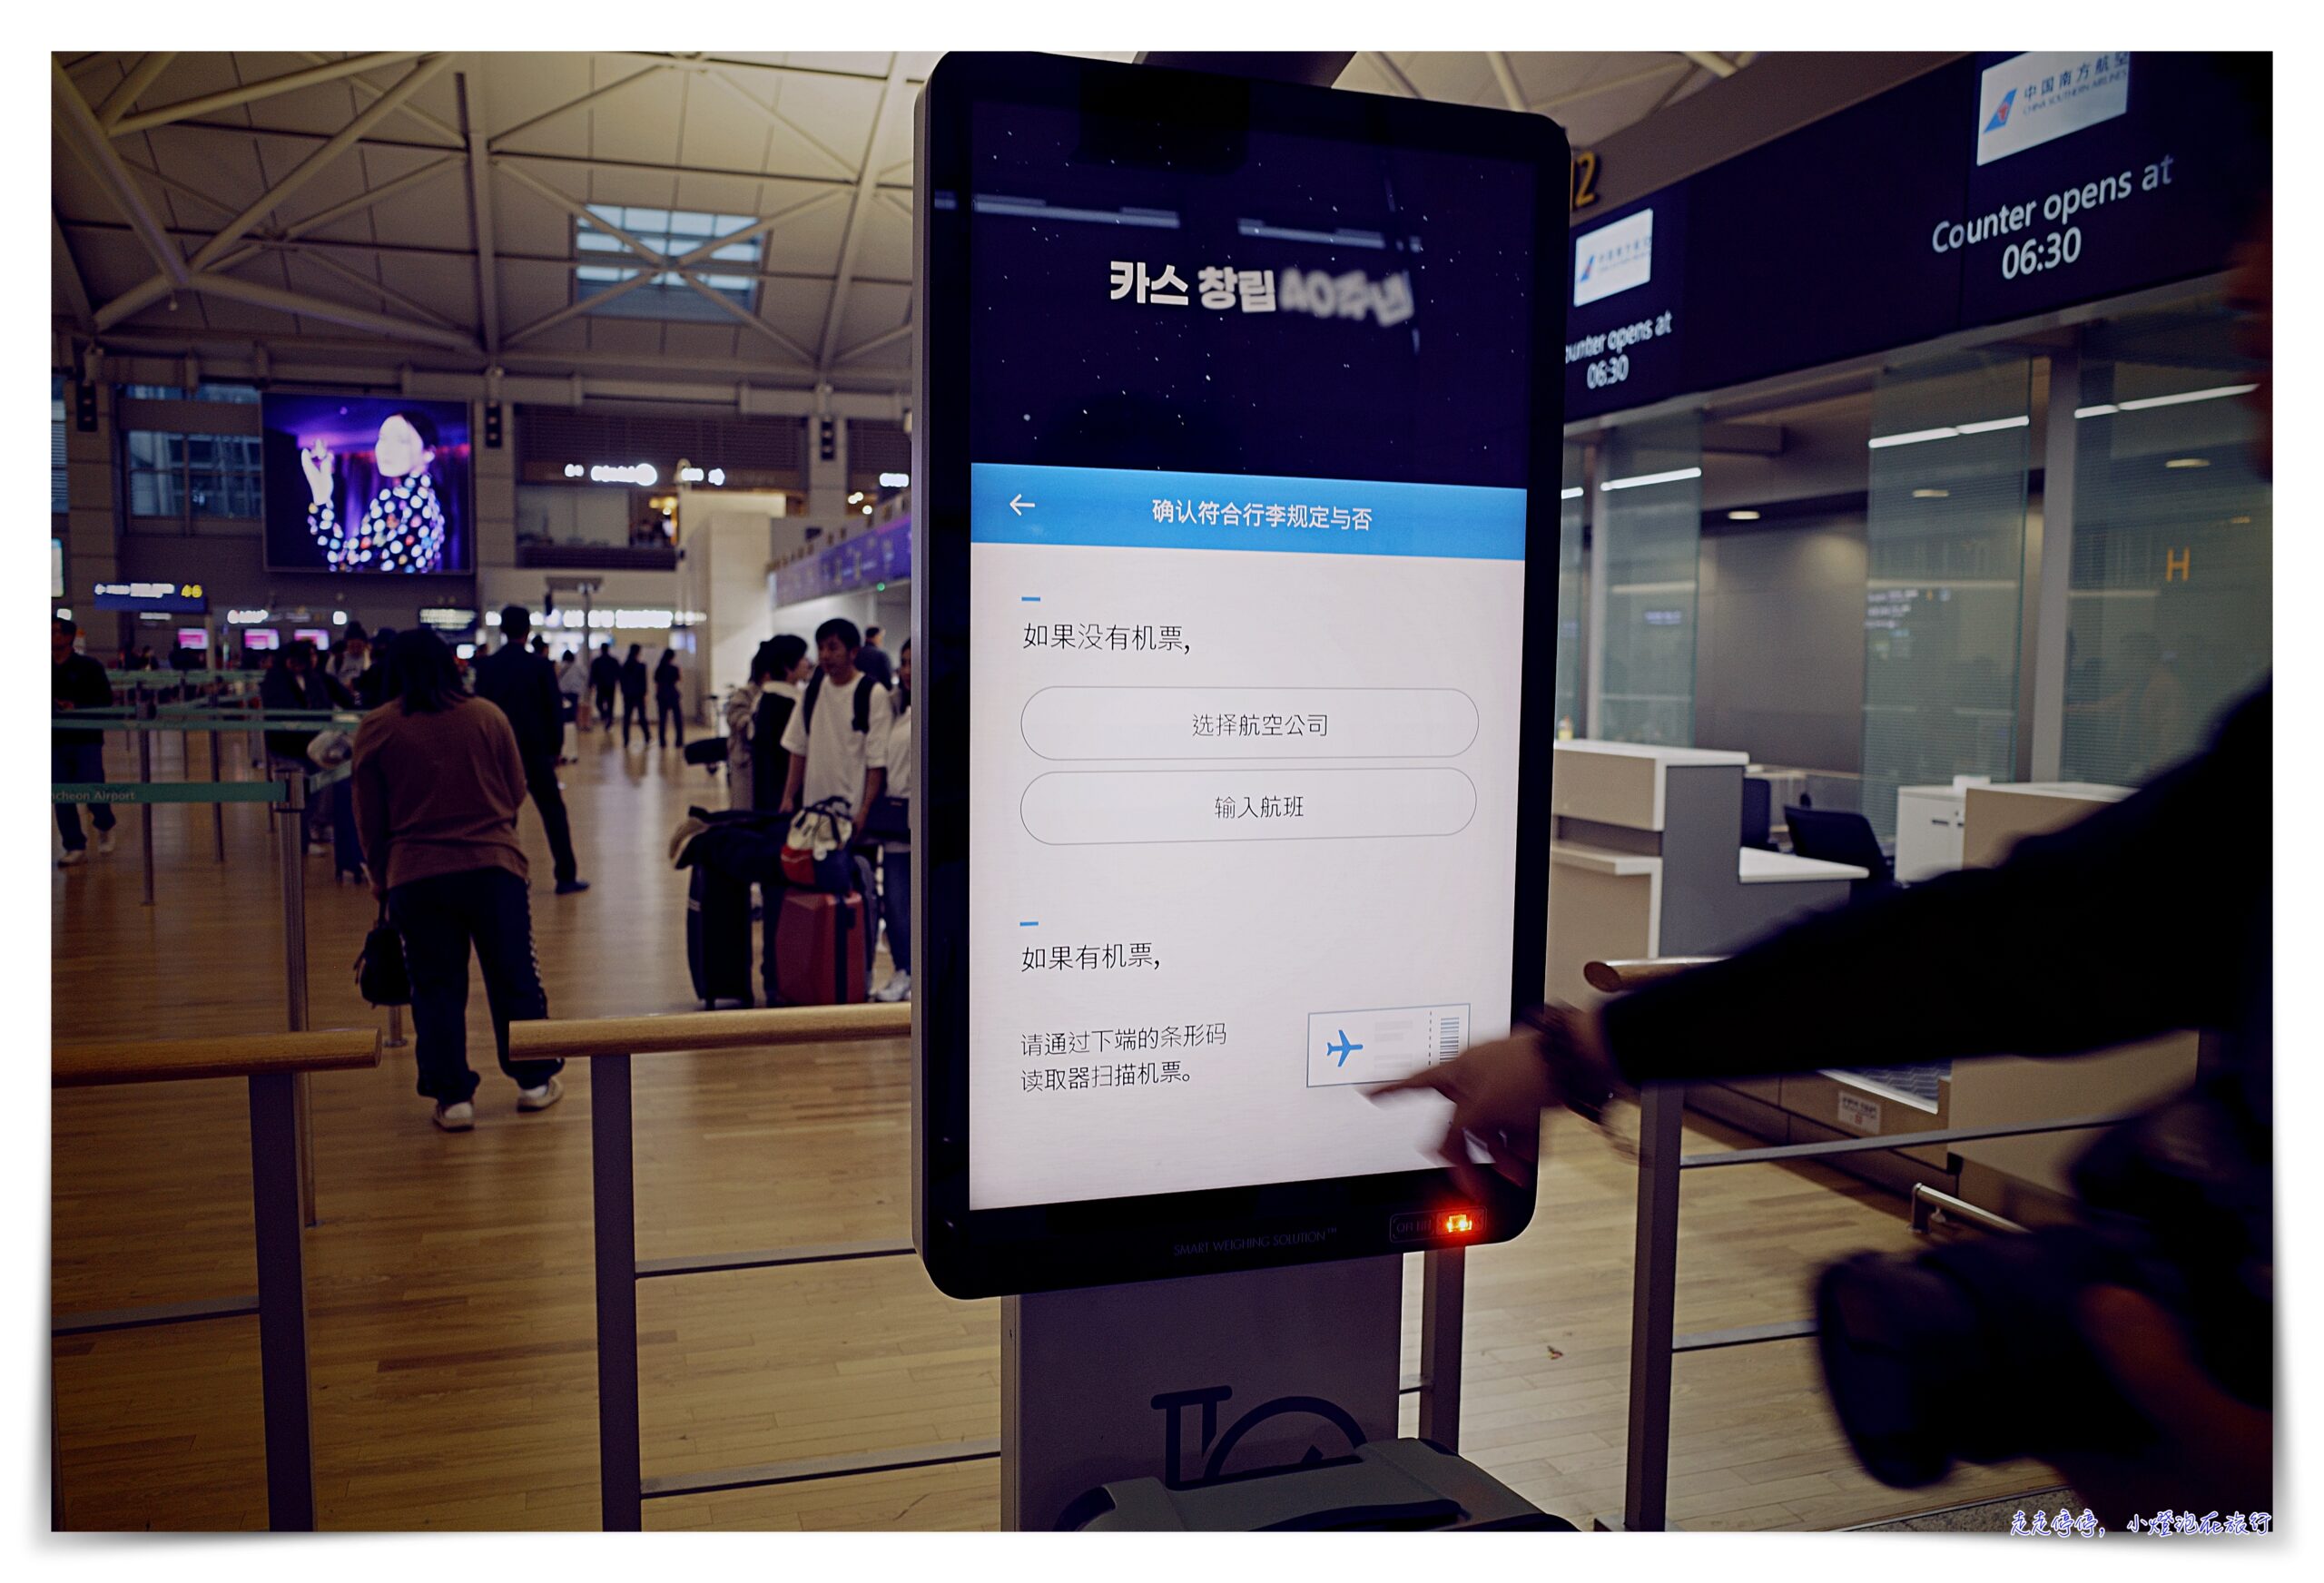 首爾仁川機場超有趣機器｜機器人幫你送行李、行李尺寸重量測量器